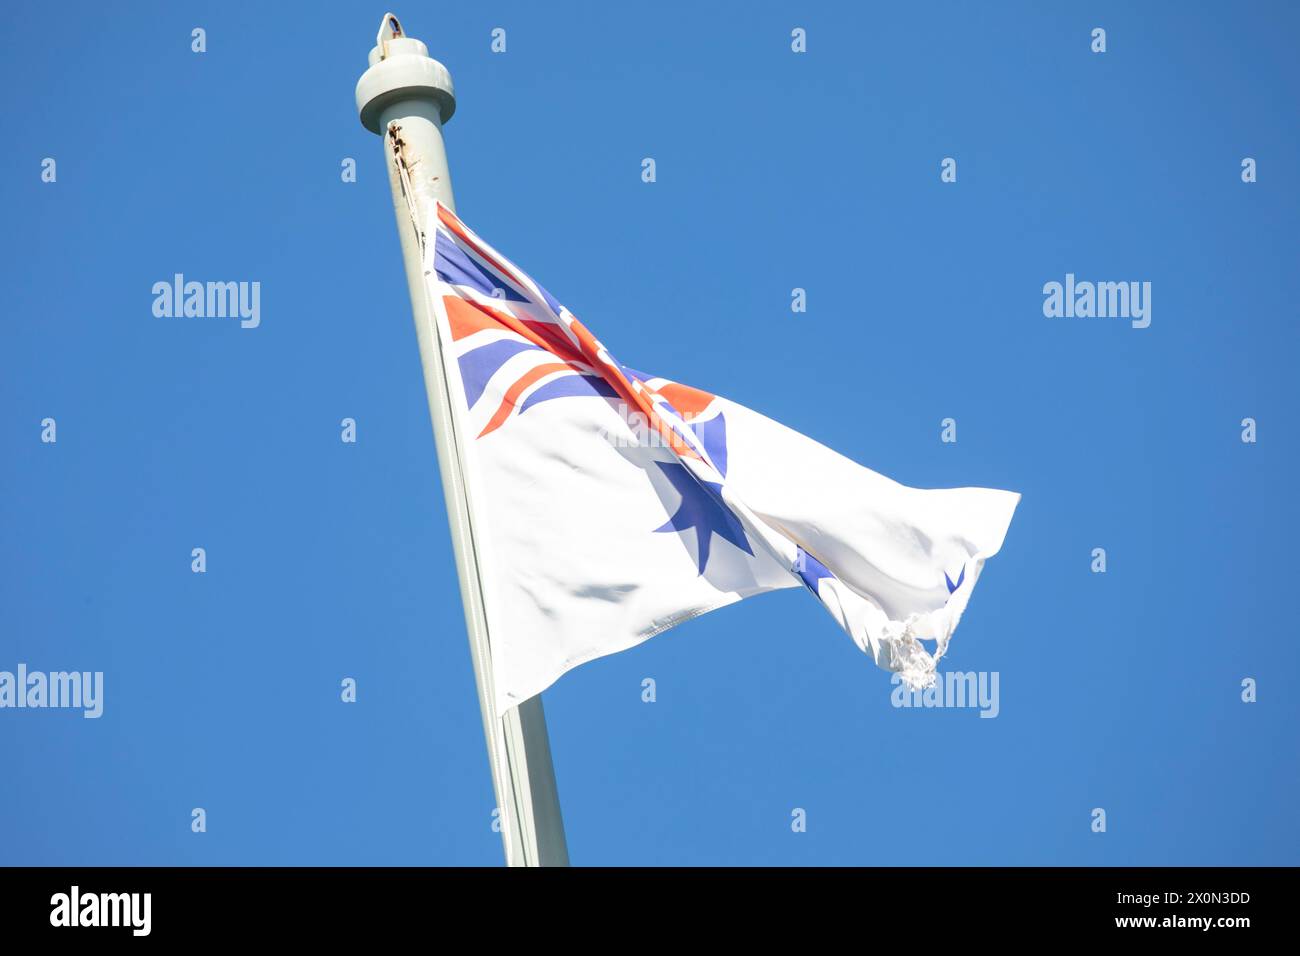 Bandiera australiana White Ensign che sventola in cima all'albero commemorativo HMAS Sydney 1 presso il forte Bradleys Head sulla riva nord di Sydney, NSW, Australia Foto Stock